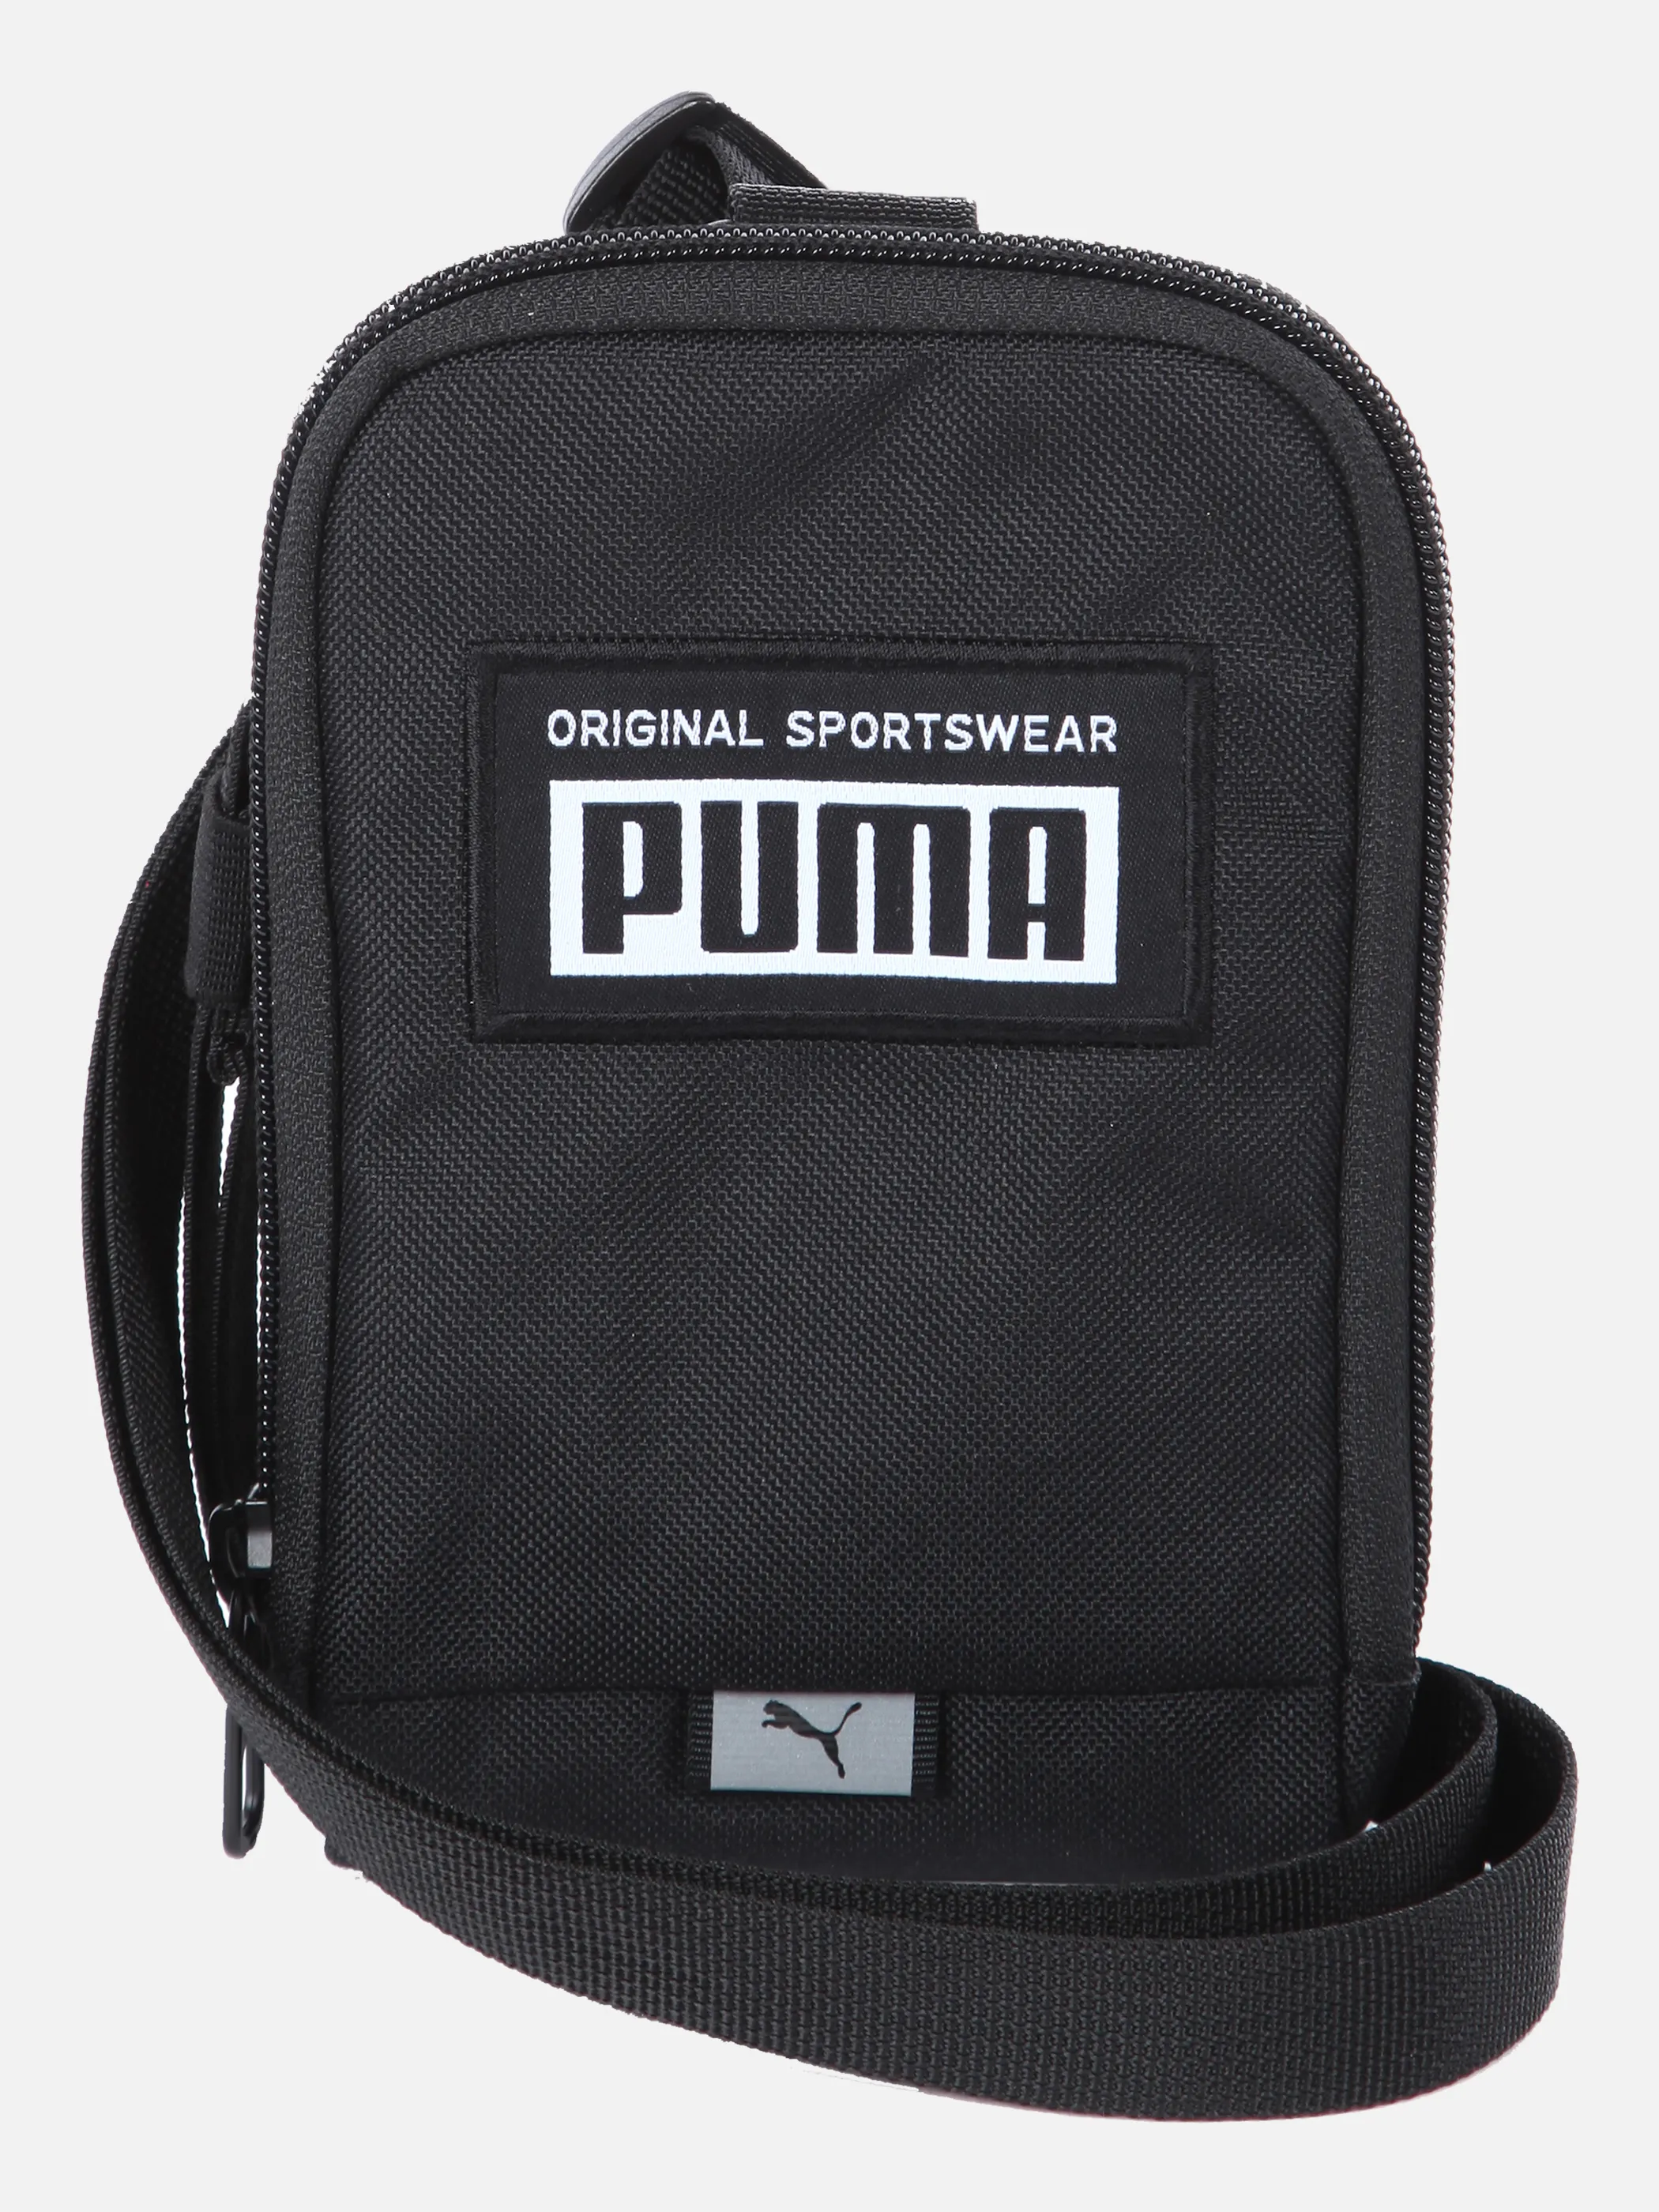 Puma 78031 Tasche Schwarz 847356 01 1